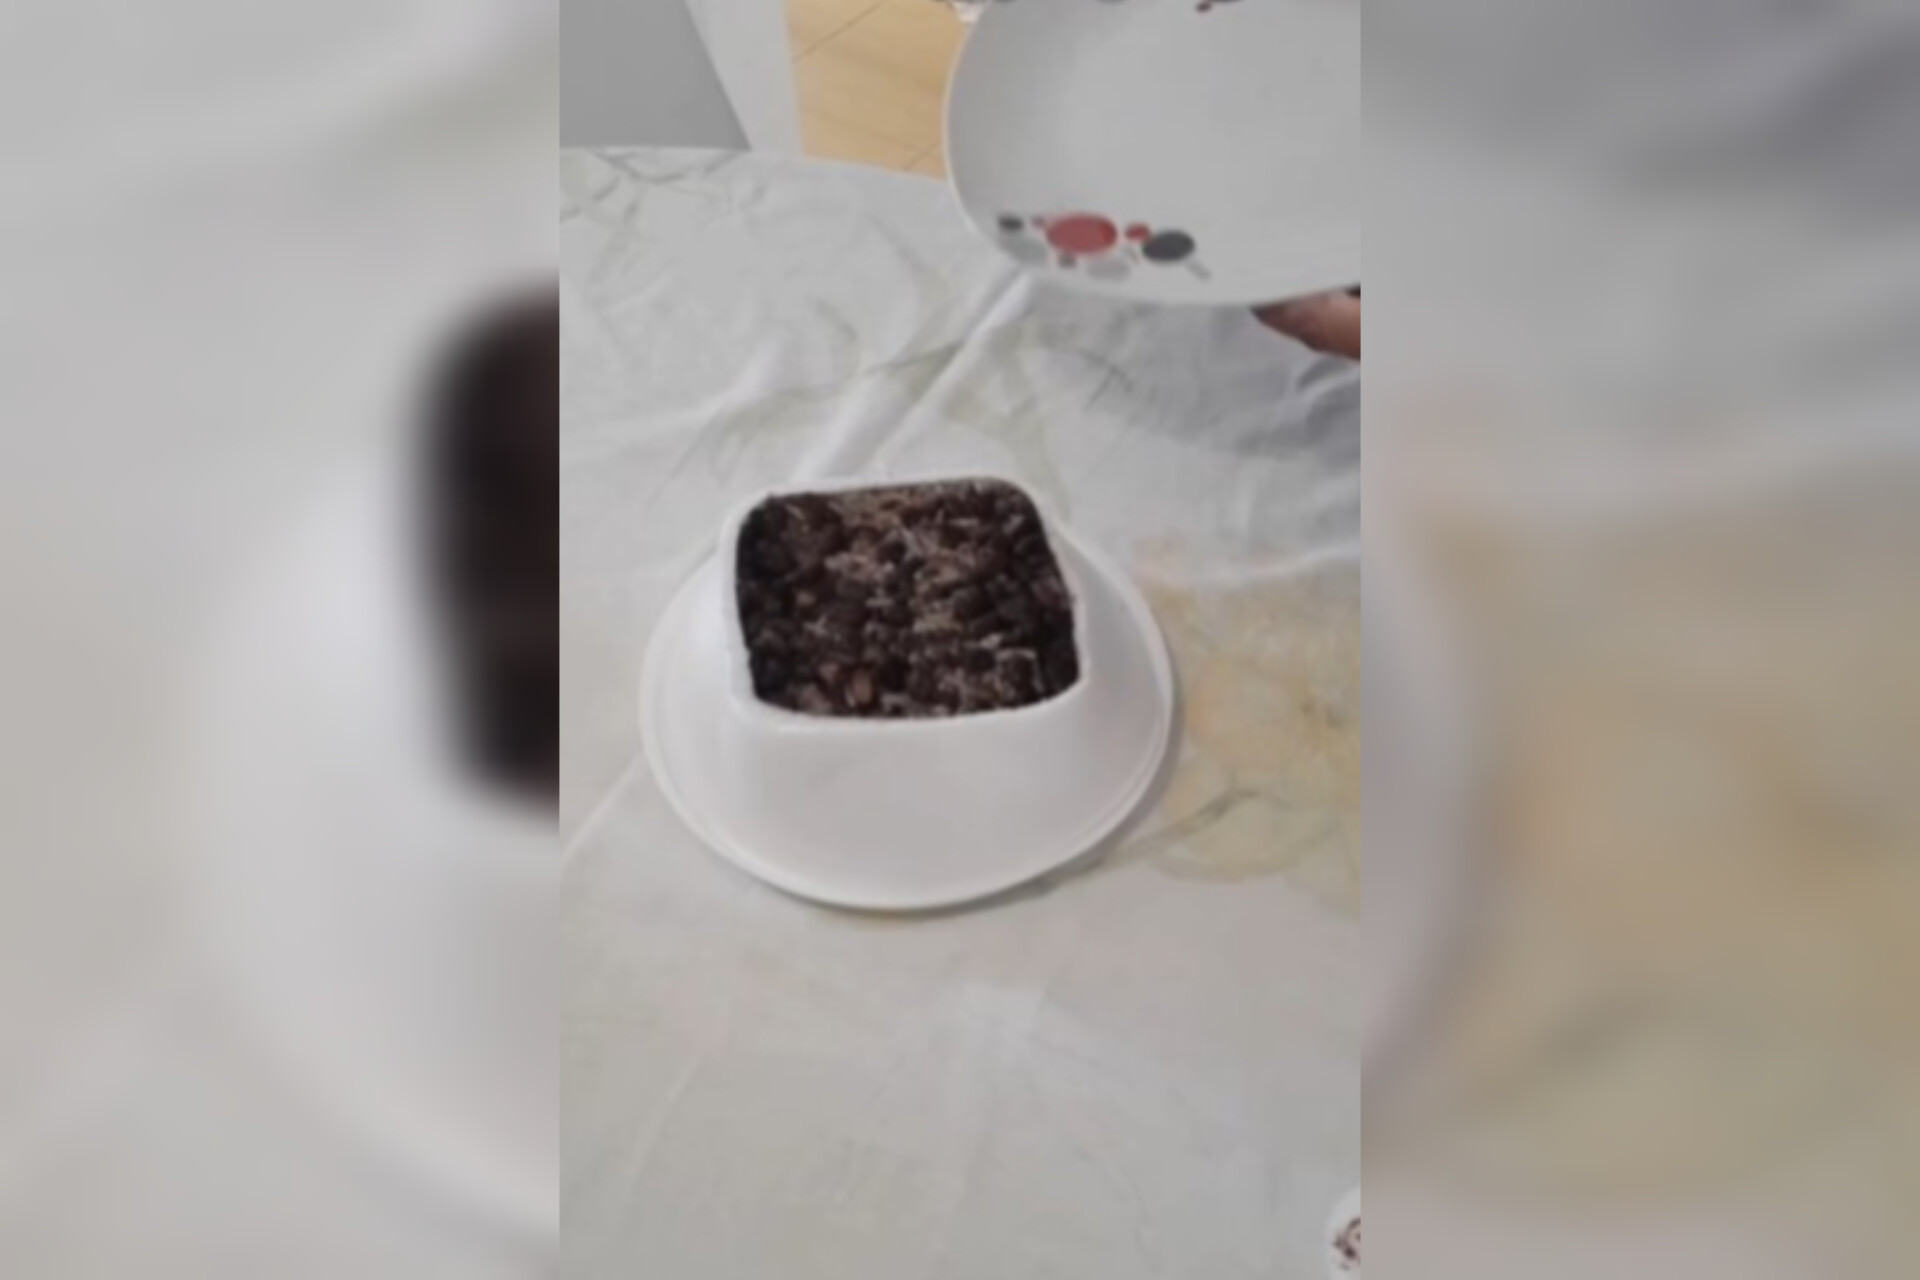 A técnica para abrir marmitex de isopor sem bagunçar a comida que tem lá dentro